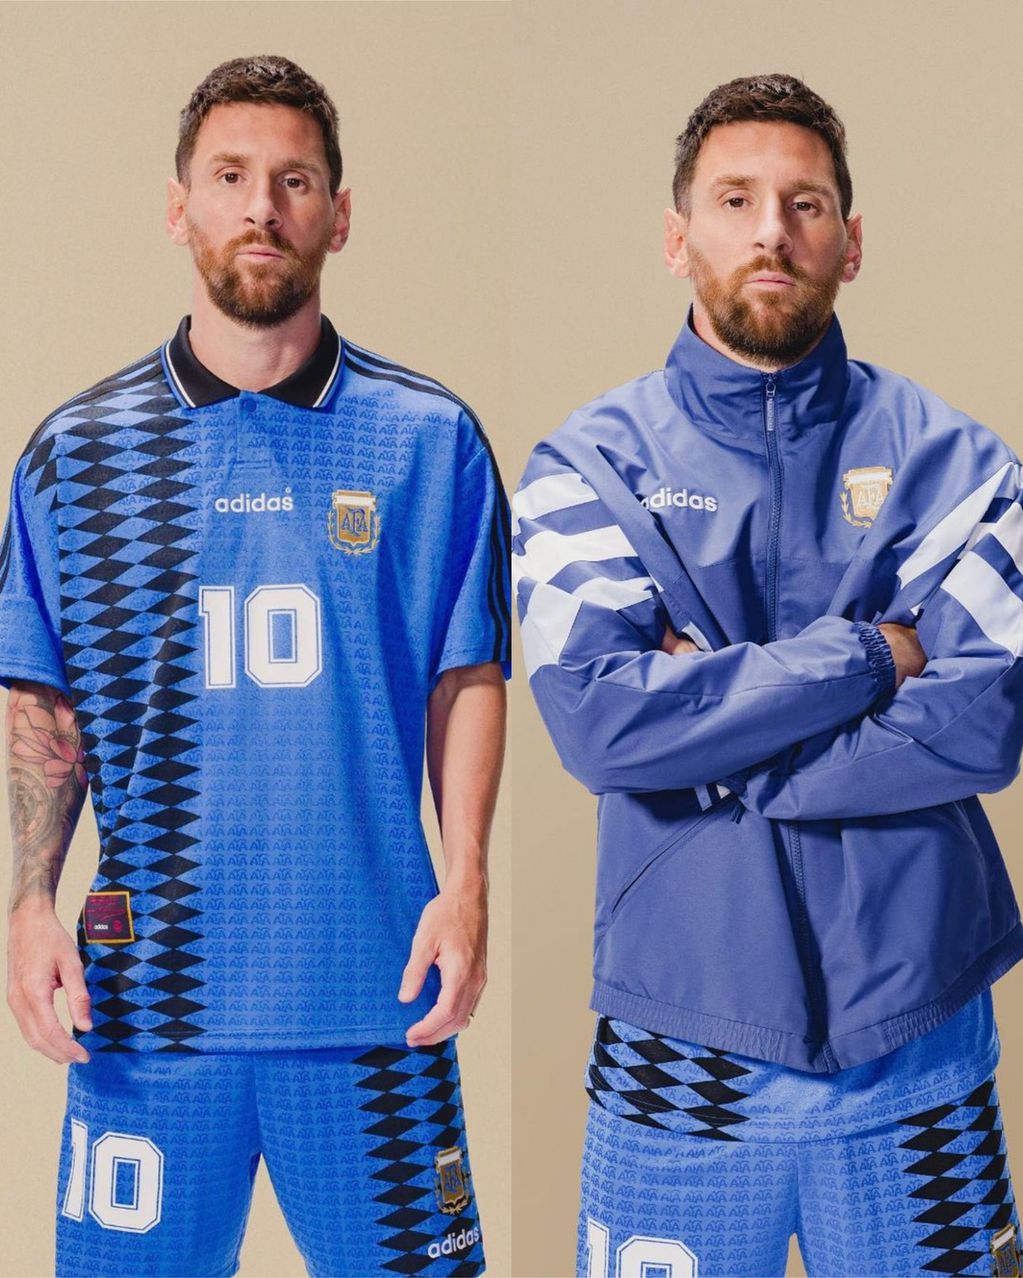 La camiseta y el buzo retro que mostró Messi y que lanza Adidas. (Adidas)